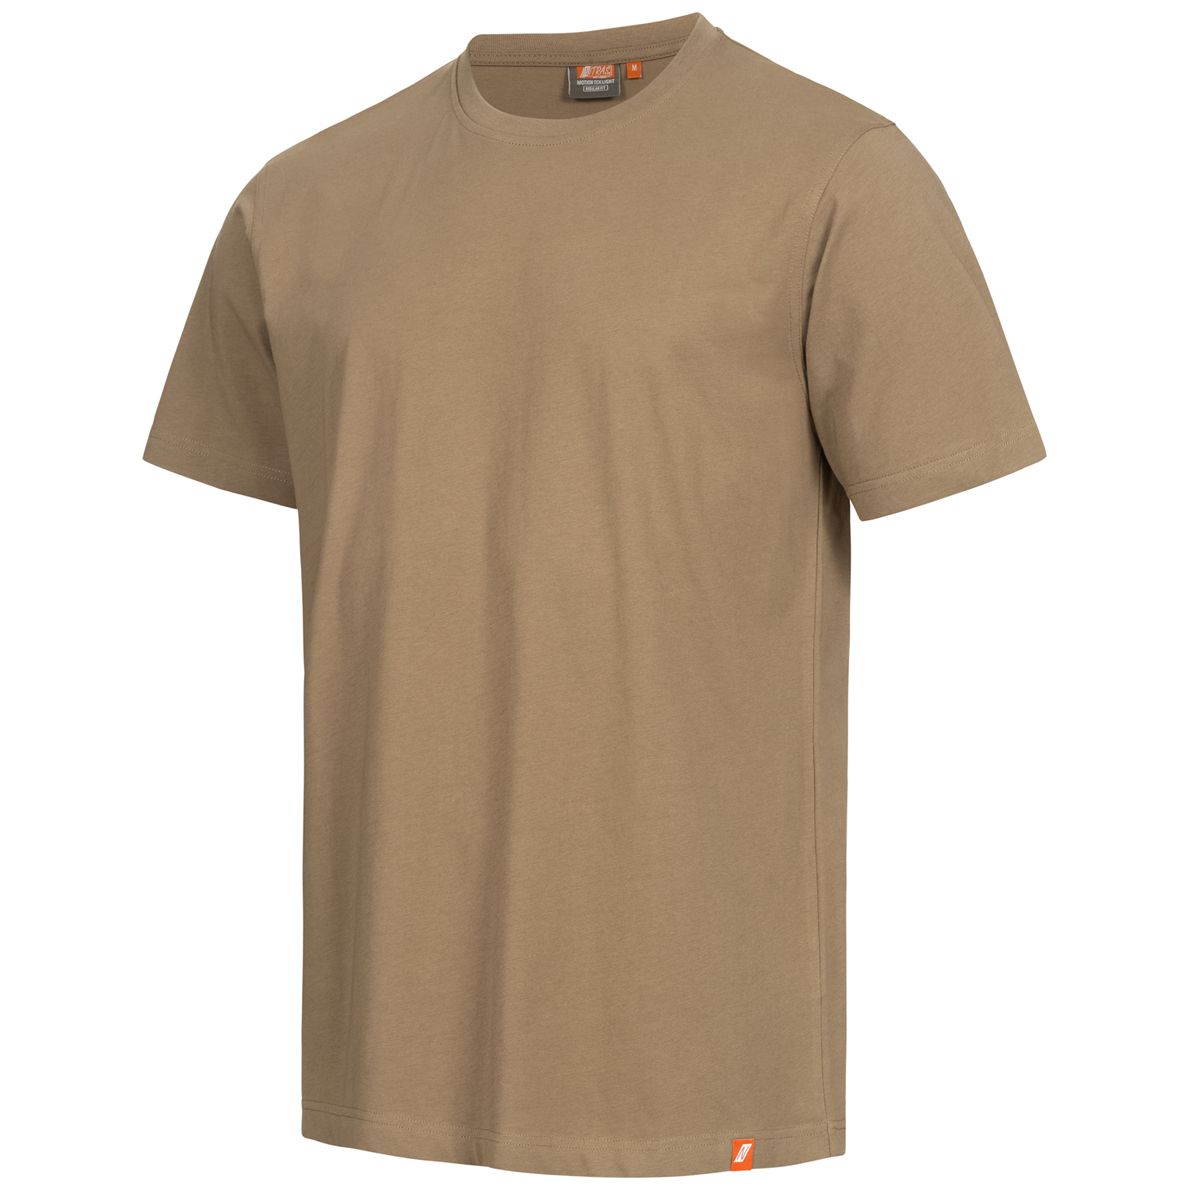 NITRAS MOTION TEX LIGHT Arbeits-T-Shirt - Kurzarm-Hemd aus 100% Baumwolle - für die Arbeit - Beige - S